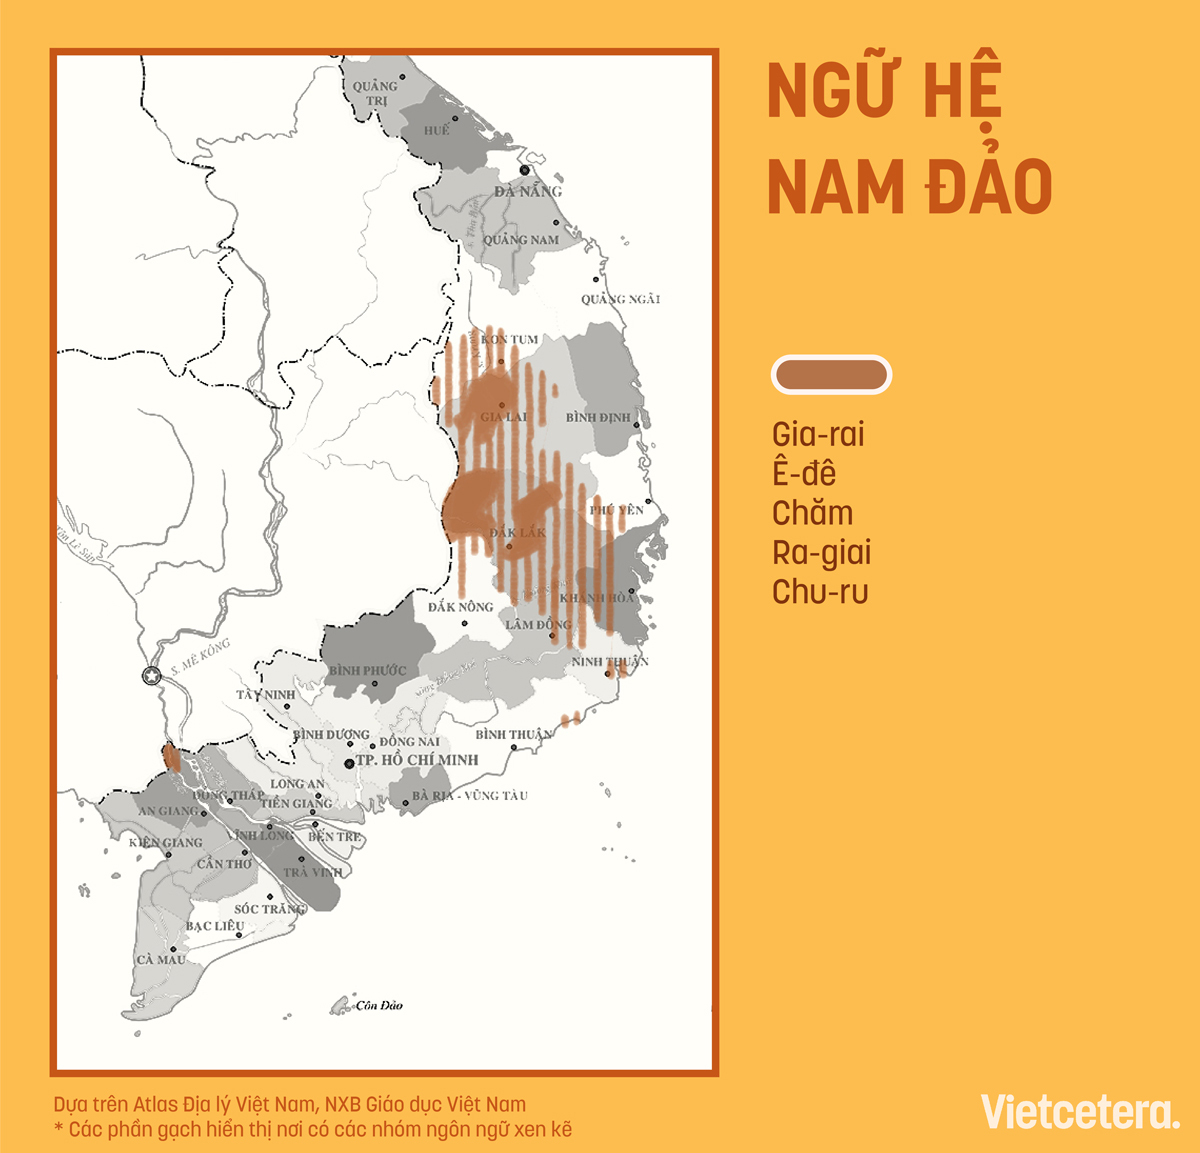 Khám phá bản đồ 54 dân tộc ngôn ngữ Việt Nam 2023 để hiểu thêm về sự đa dạng của ngôn ngữ và văn hóa tại Việt Nam. Cùng trải nghiệm và khám phá những giá trị văn hóa và tôn giáo đặc sắc của mỗi dân tộc tại đây.